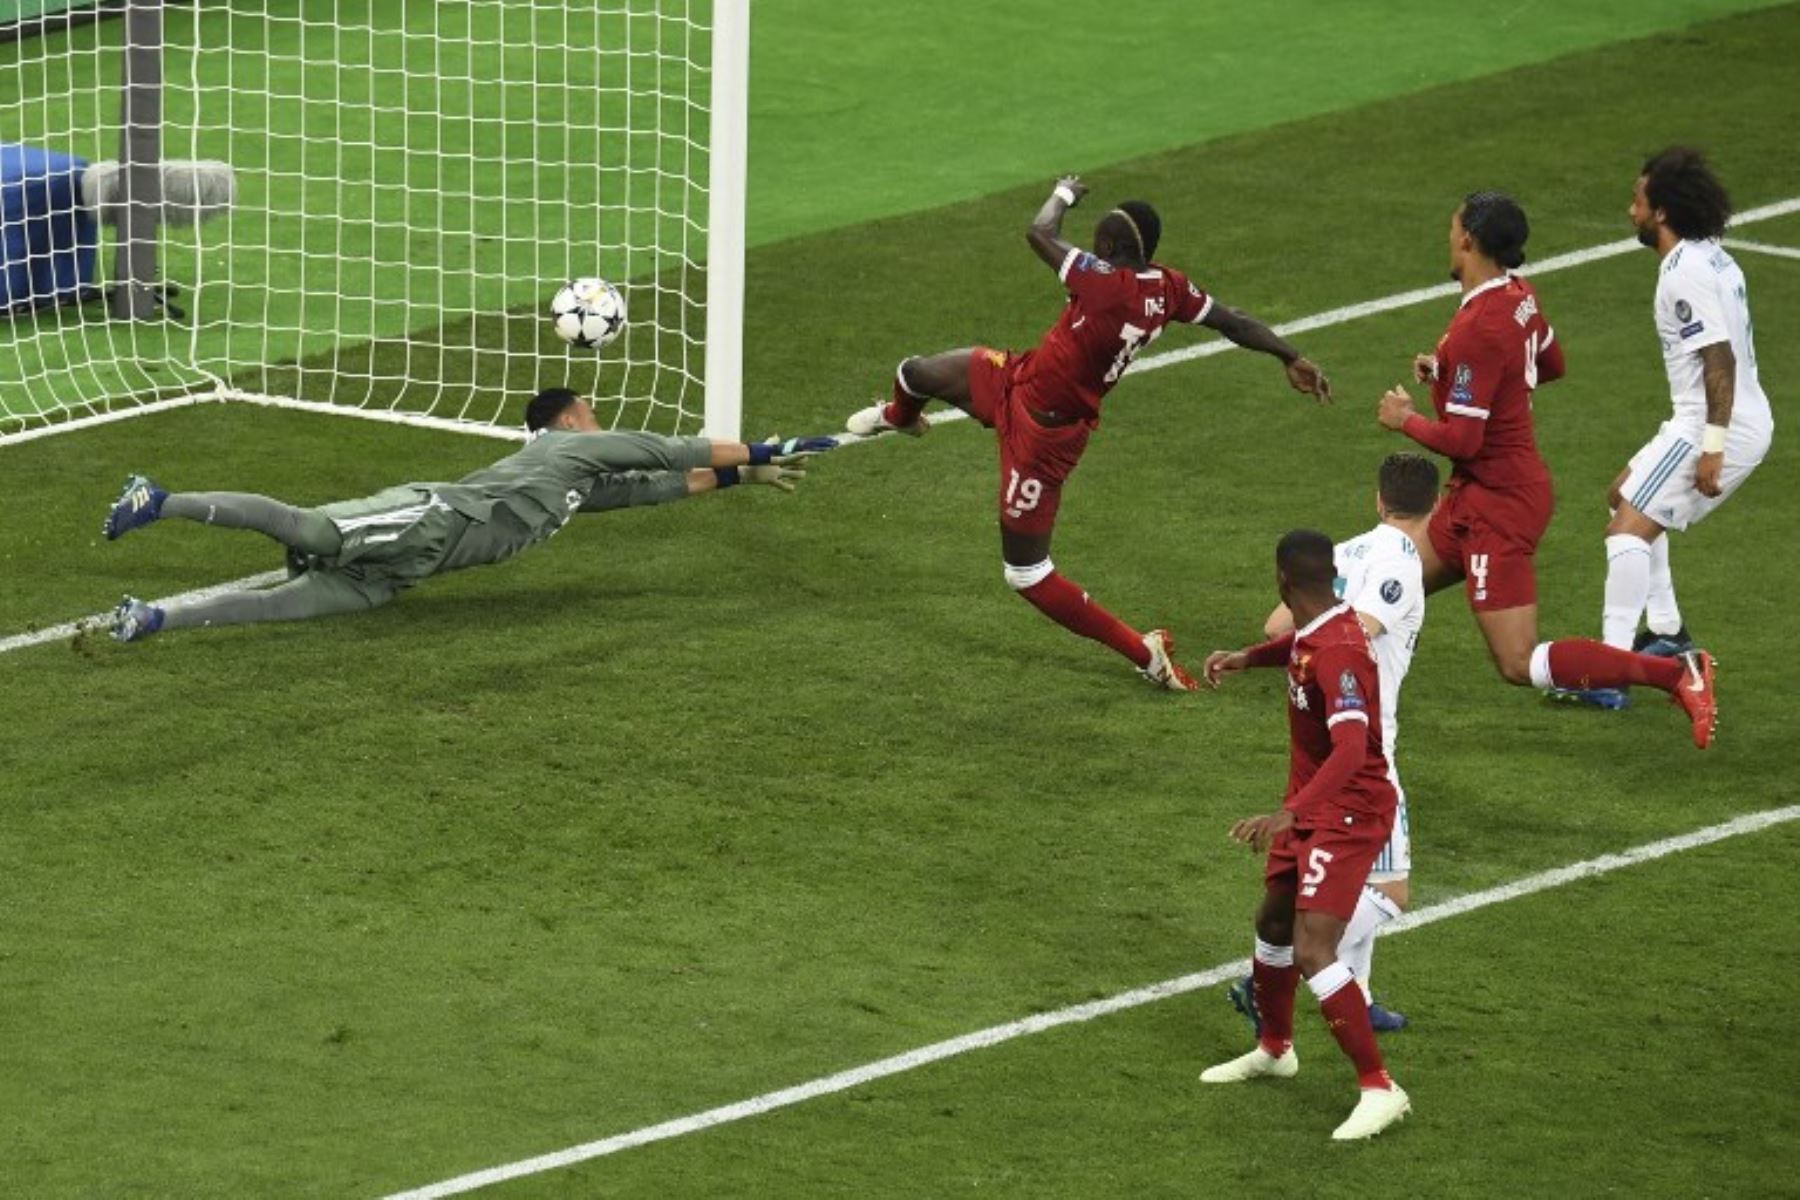 El mediocampista senegalés del Liverpool Sadio Mane marca el 1-1 ante el portero costarricense del Real Madrid Keylor Navas ,durante el partido de fútbol final de la UEFA Champions League.Foto:AFP